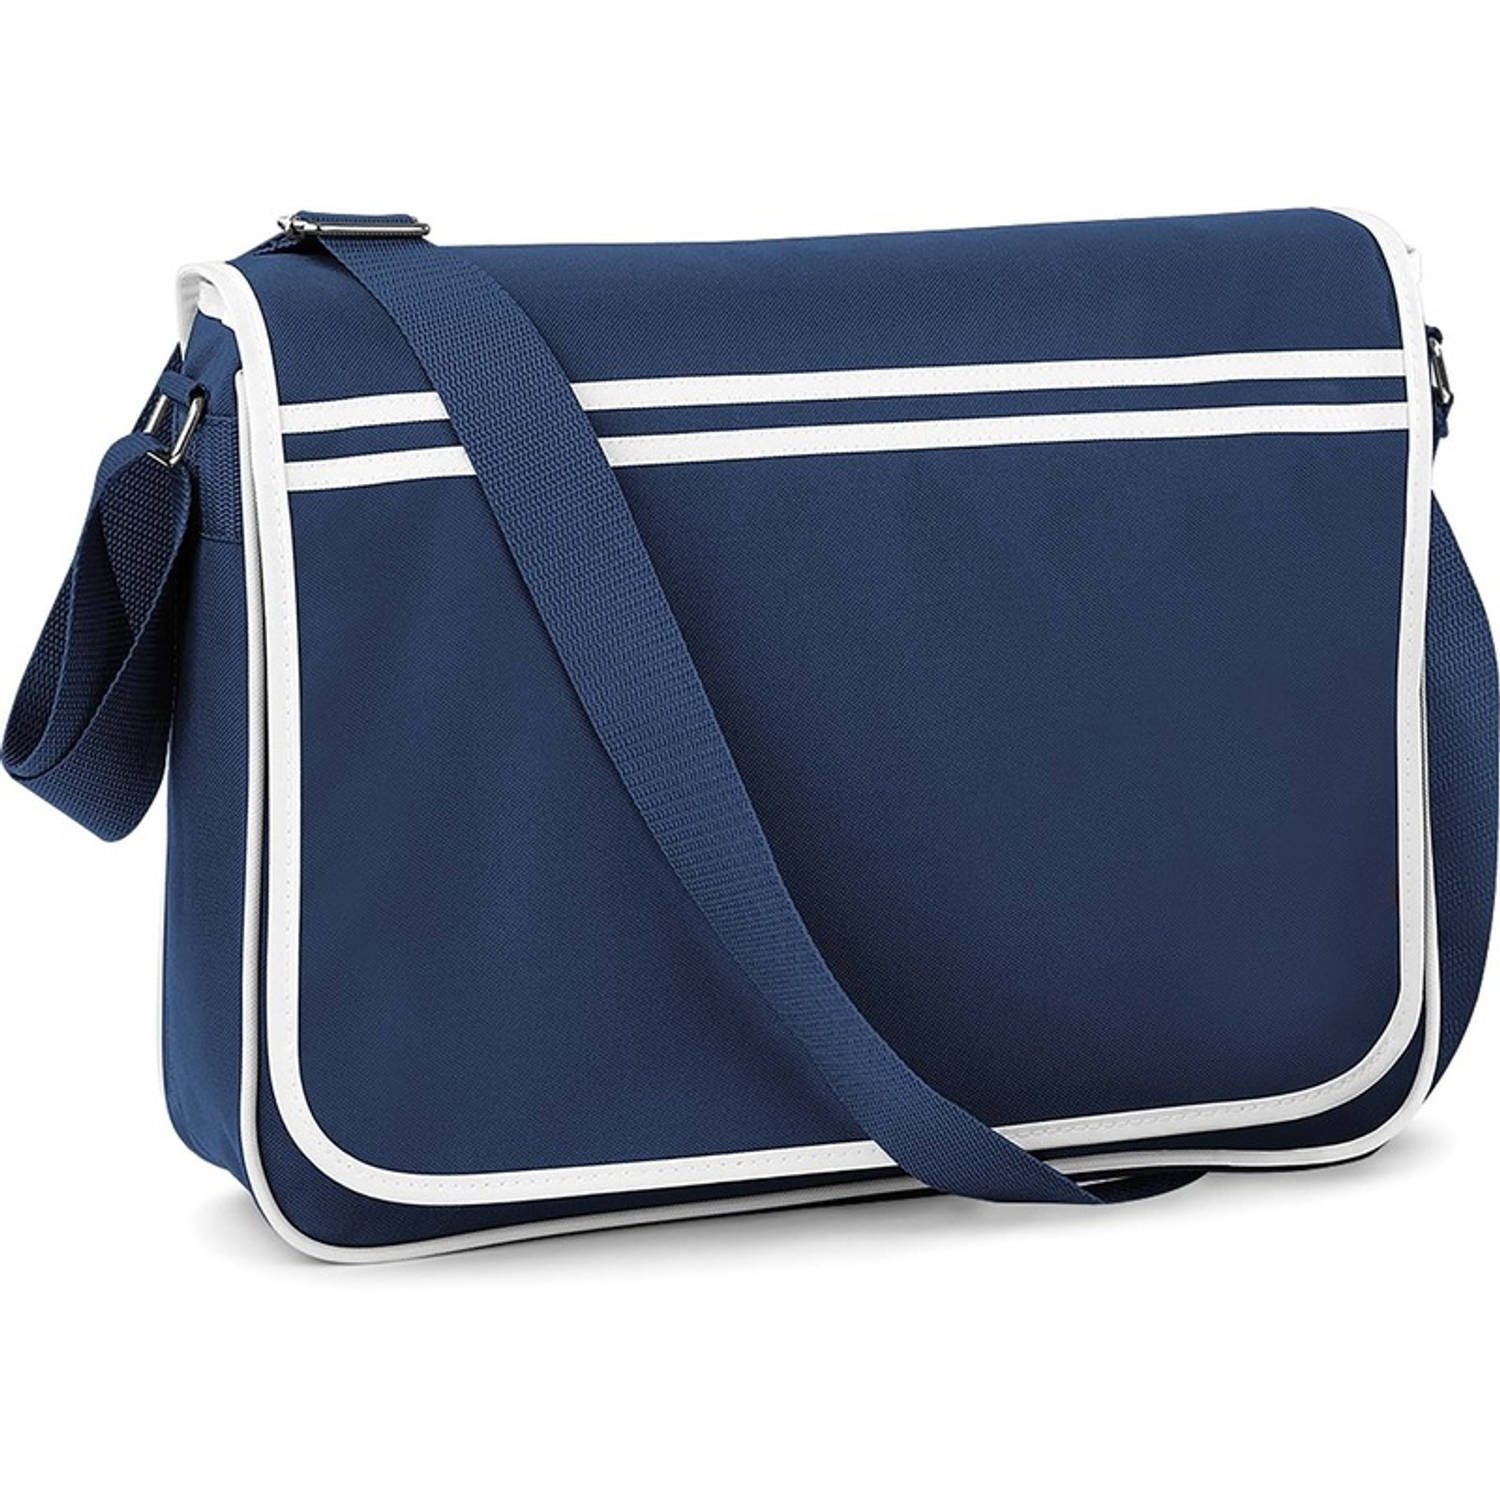 Retro schoudertas-aktetas navy-wit 40 cm voor dames-heren Schooltassen-laptop tassen met schouderban